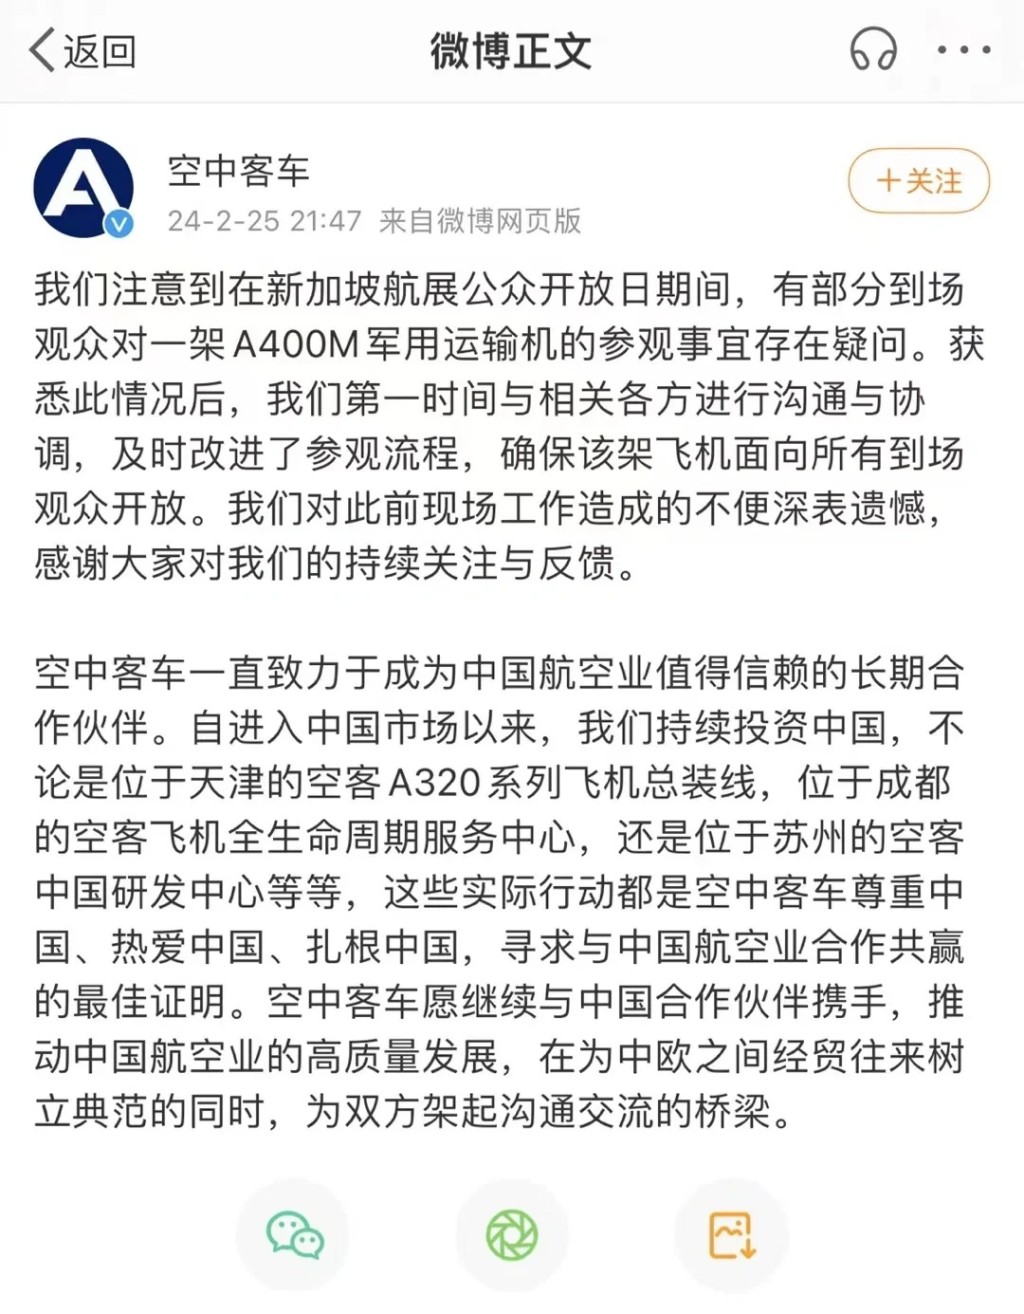 有中国网民投诉被阻止参观德国空军的A400M运输机。小红书